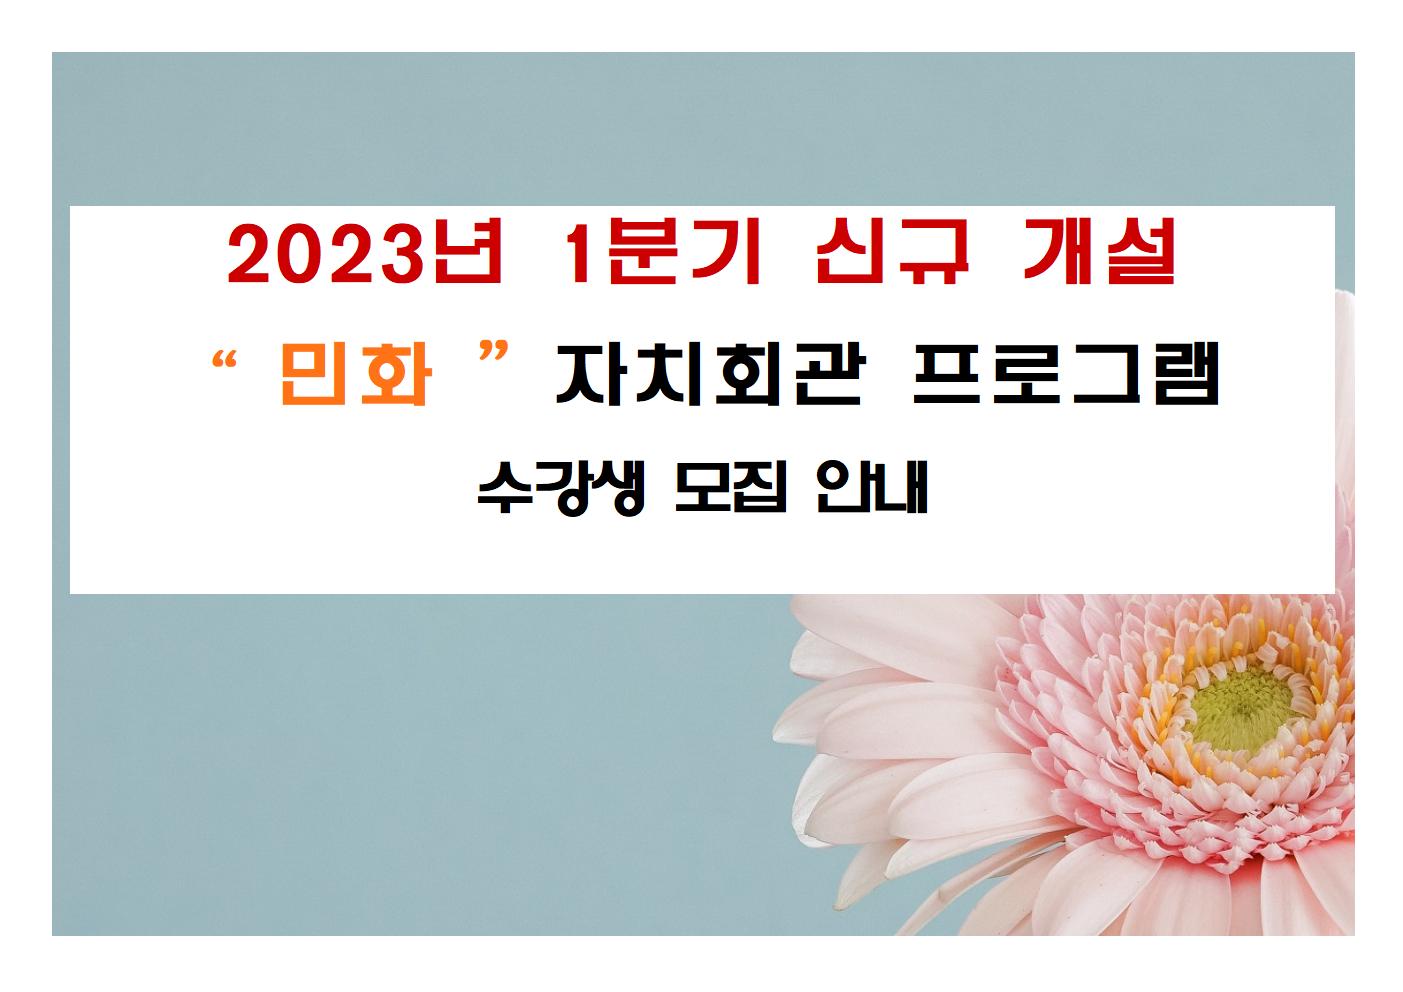 신규 강좌  (2~3월)   " 민화 "